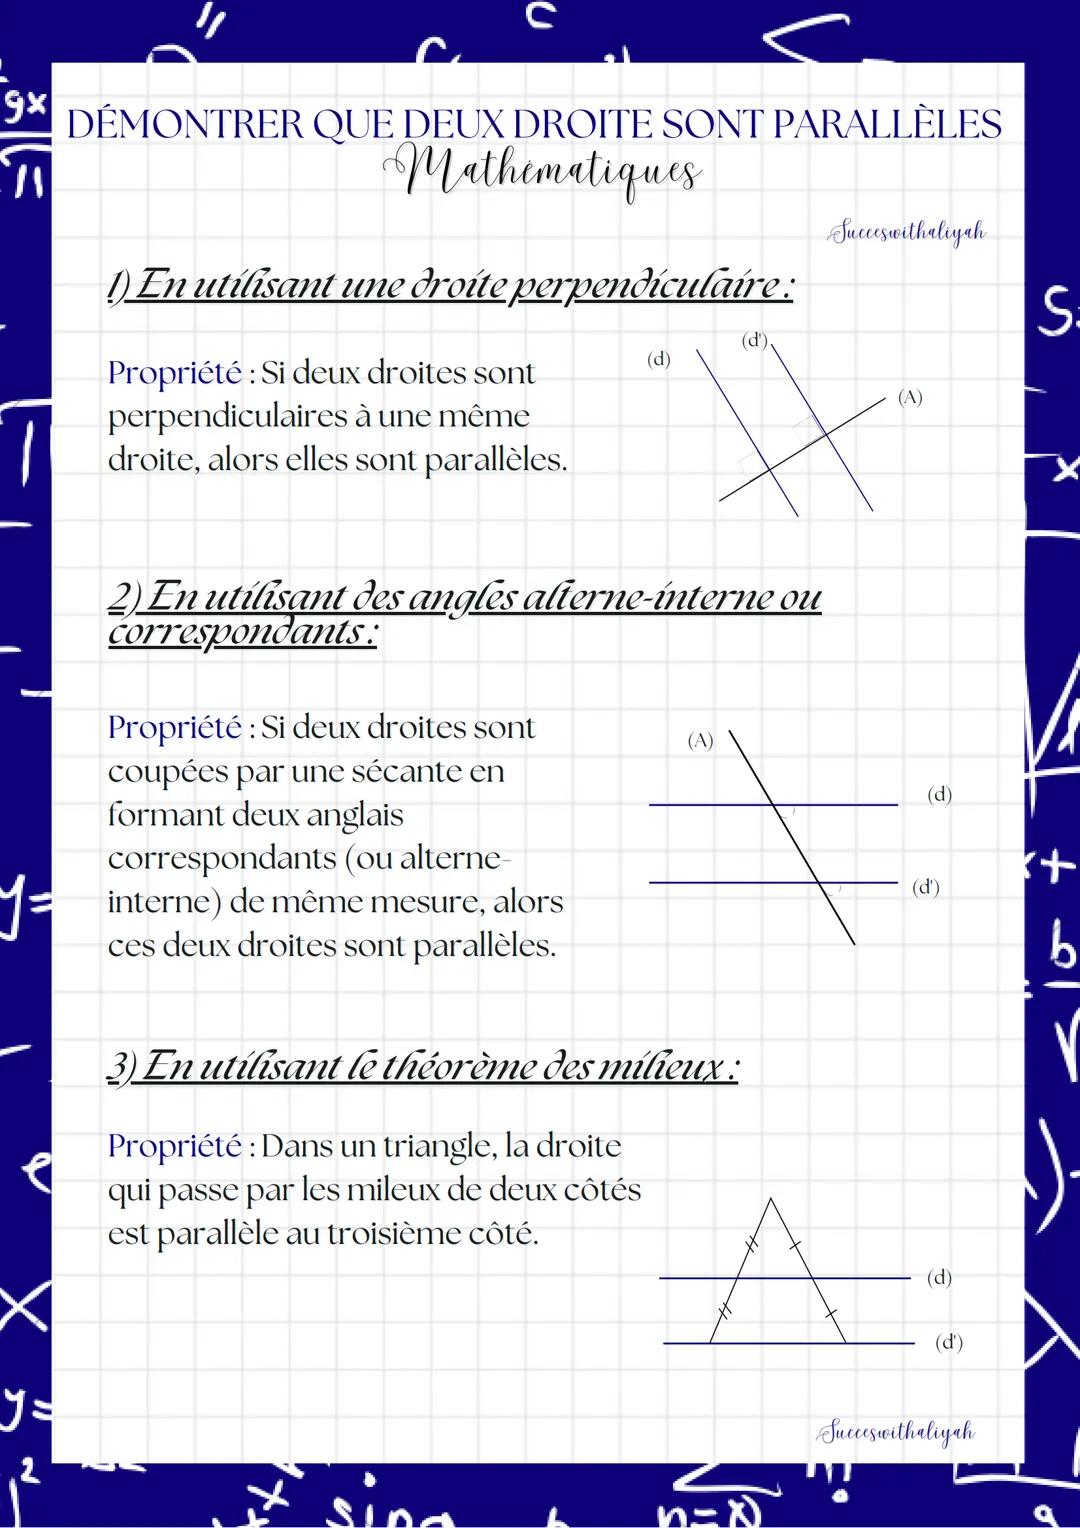 9x DÉMONTRER QUE DEUX DROITE SONT PARALLÈLES
gx
W
Mathematiques
y =
2
с
1) En utilisant une droite perpendiculaire :
Propriété : Si deux dro